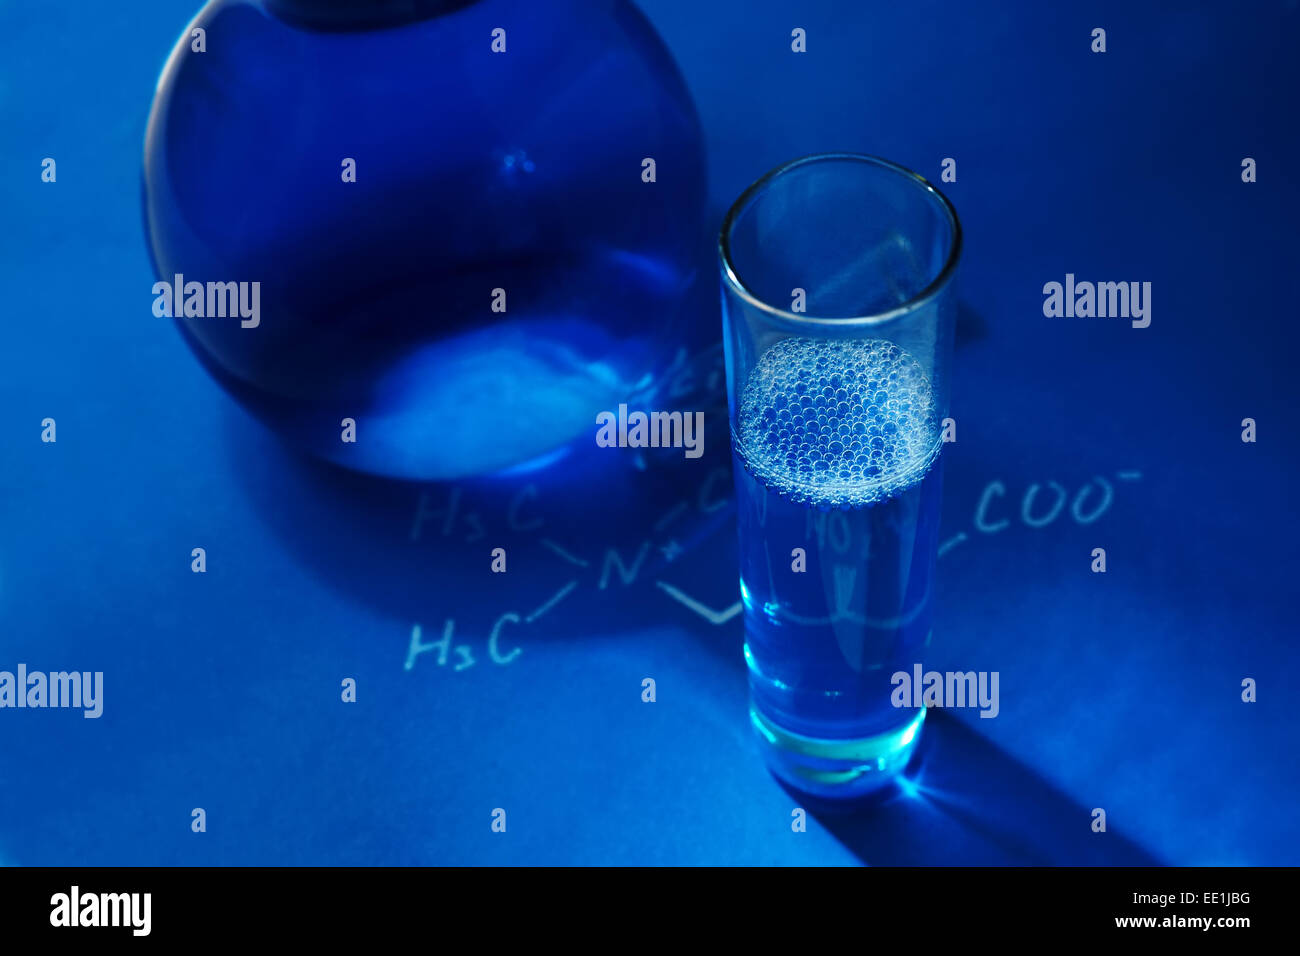 Laborglas auf blauem Hintergrund.  Chemie - Konzept Foto Stockfoto